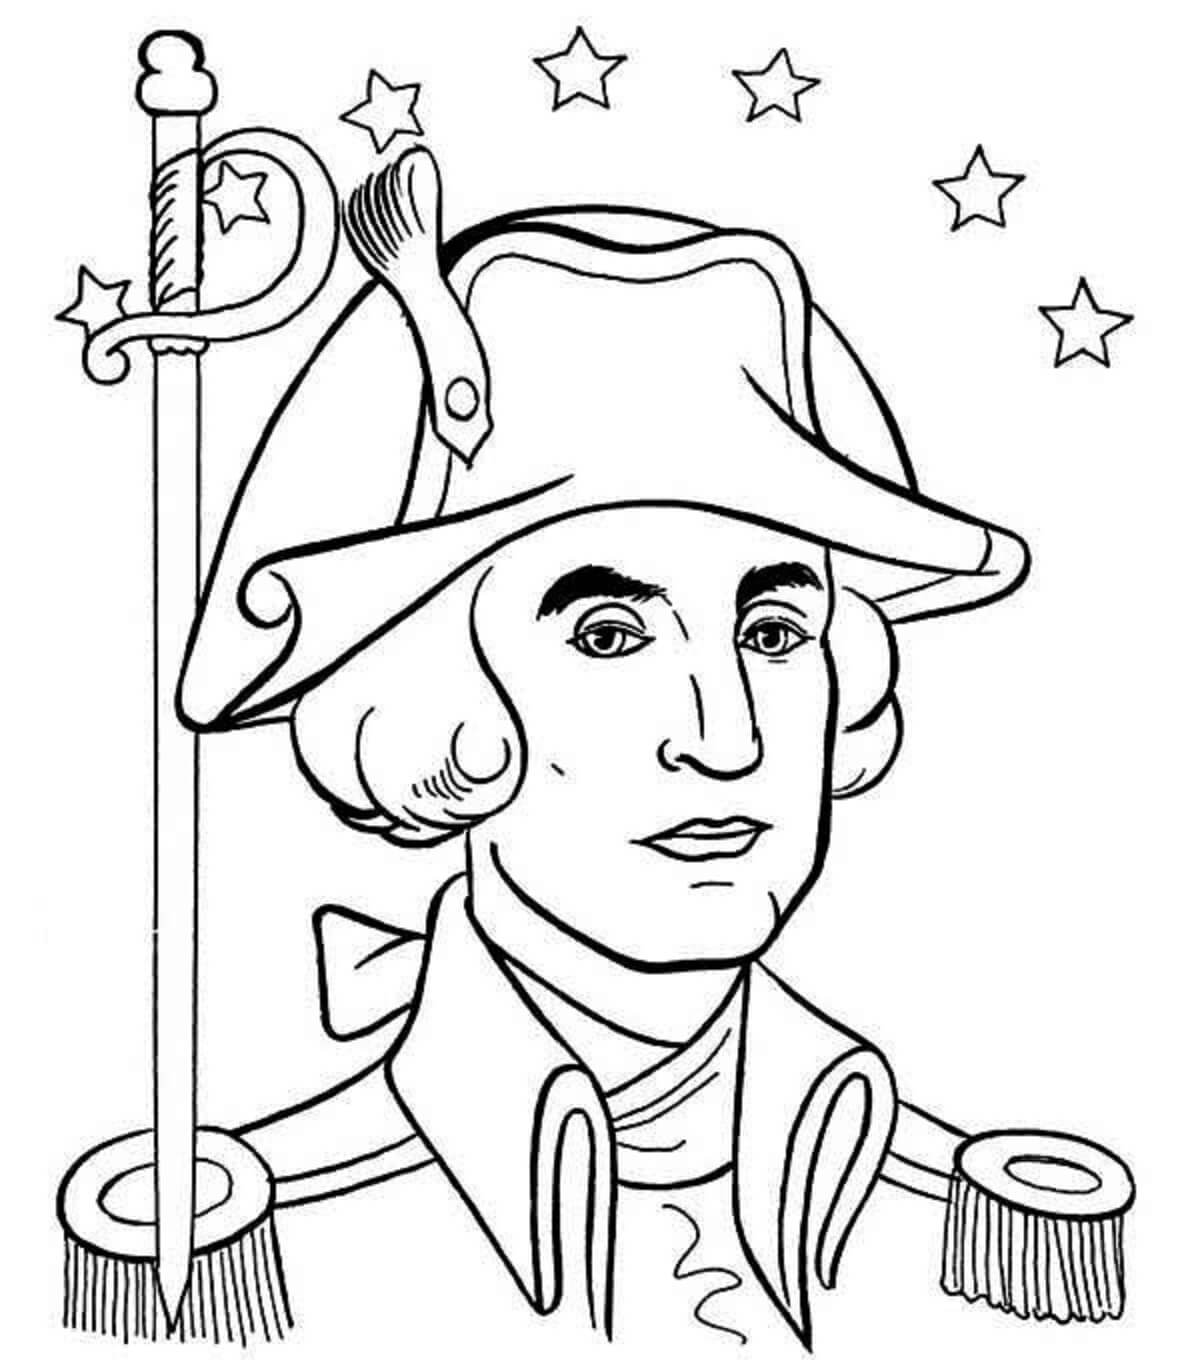 별과 함께 있는 조지 워싱턴의 초상화 coloring page